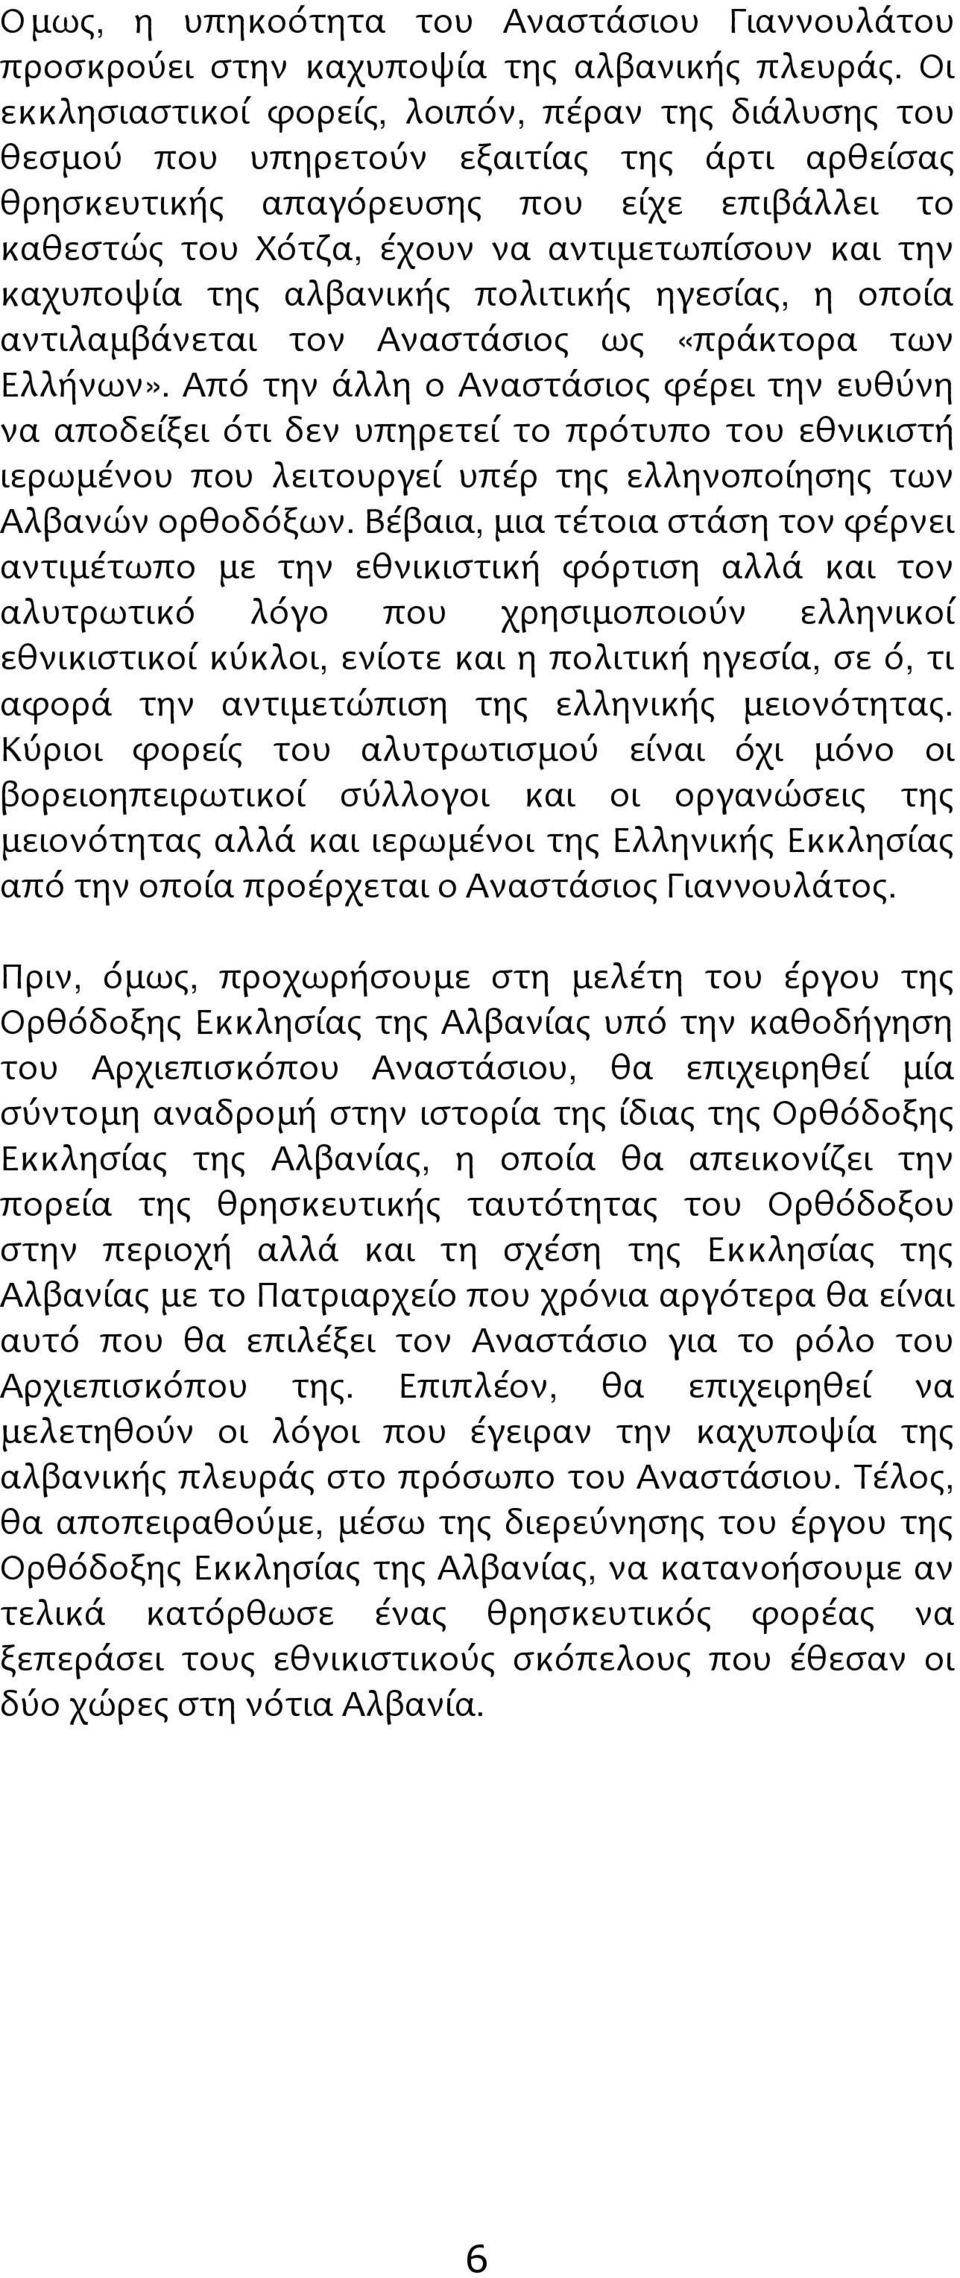 την καχυποψία της αλβανικής πολιτικής ηγεσίας, η οποία αντιλαμβάνεται τον Αναστάσιος ως «πράκτορα των Ελλήνων».